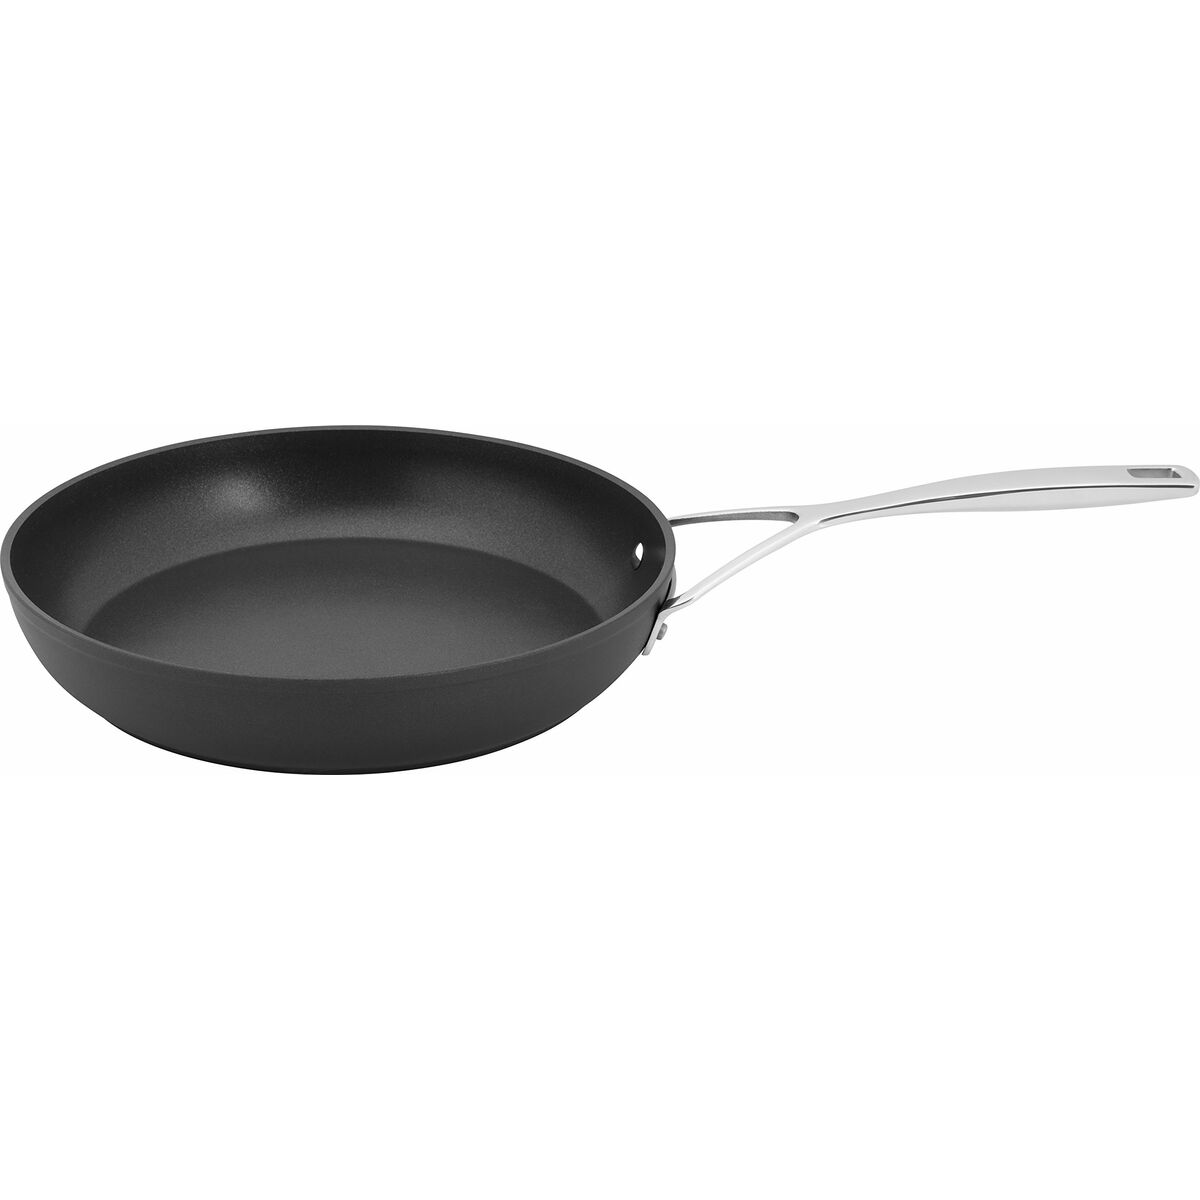 Pan à frire antiadhésive Demeyere Pro 5 Aluminium en acier inoxydable en acier noir Ø 28 cm 8,8 x 5,6 x 0,5 cm